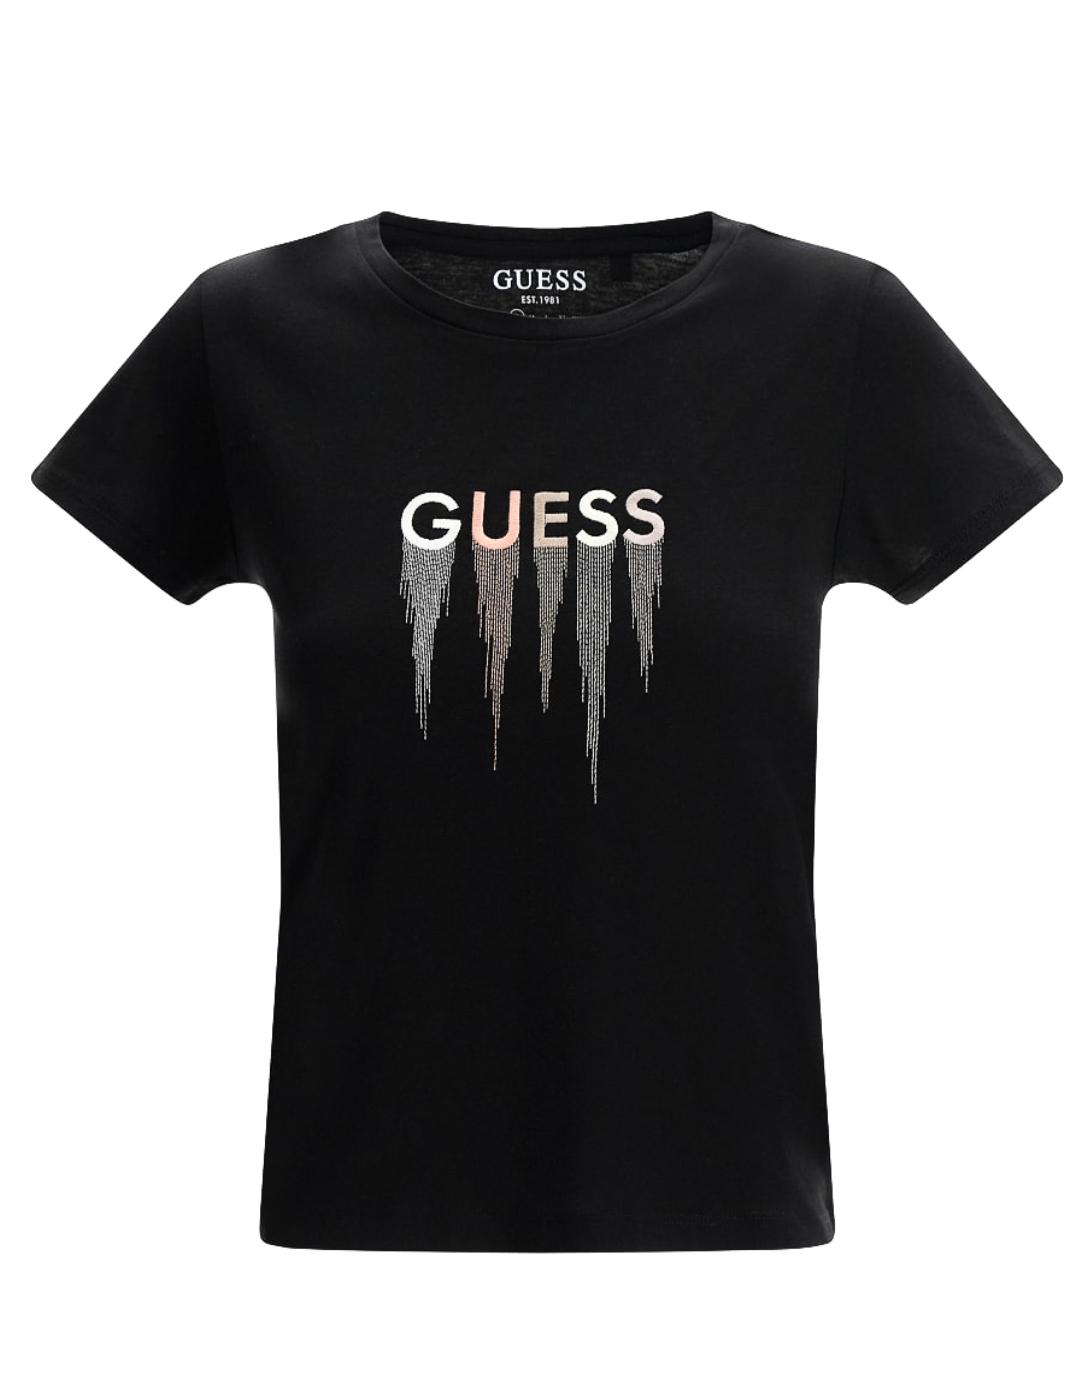 Camiseta Guess Waterfall negra para mujer-a